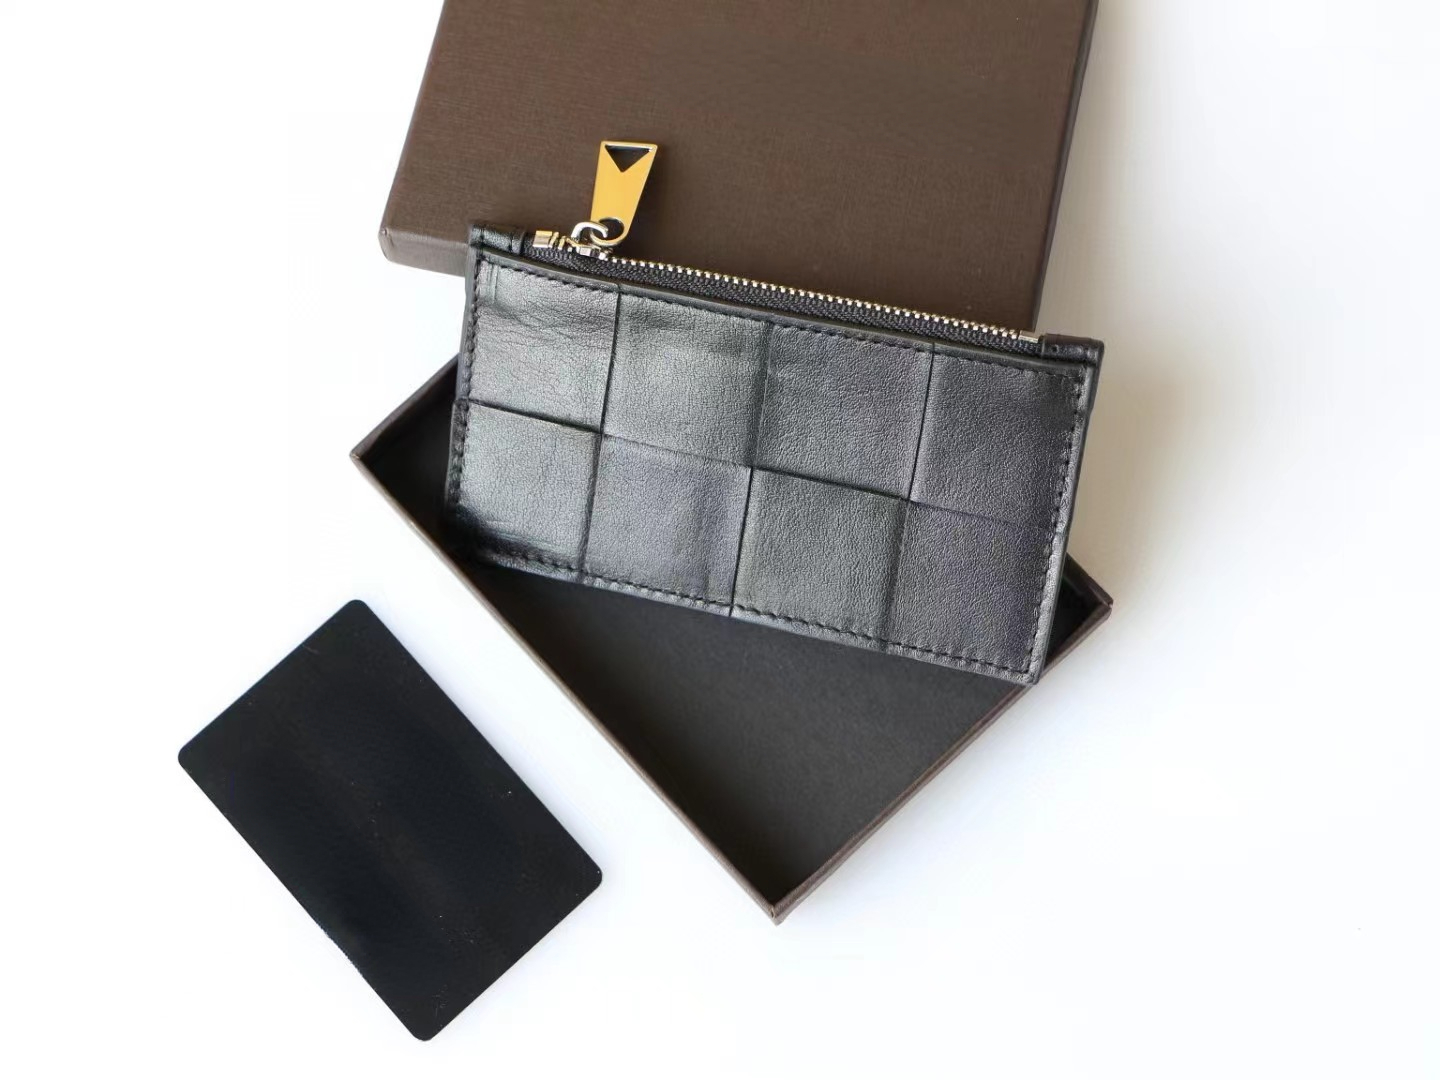 Orijinal deri cüzdanlar Intrecciato kaset iki katlı zip cüzdan kredi kartı kasa para çantası dokuma lüks marka tasarımcısı uzun kısa çanta erkekleri kadın ile kutu 2546 hediye